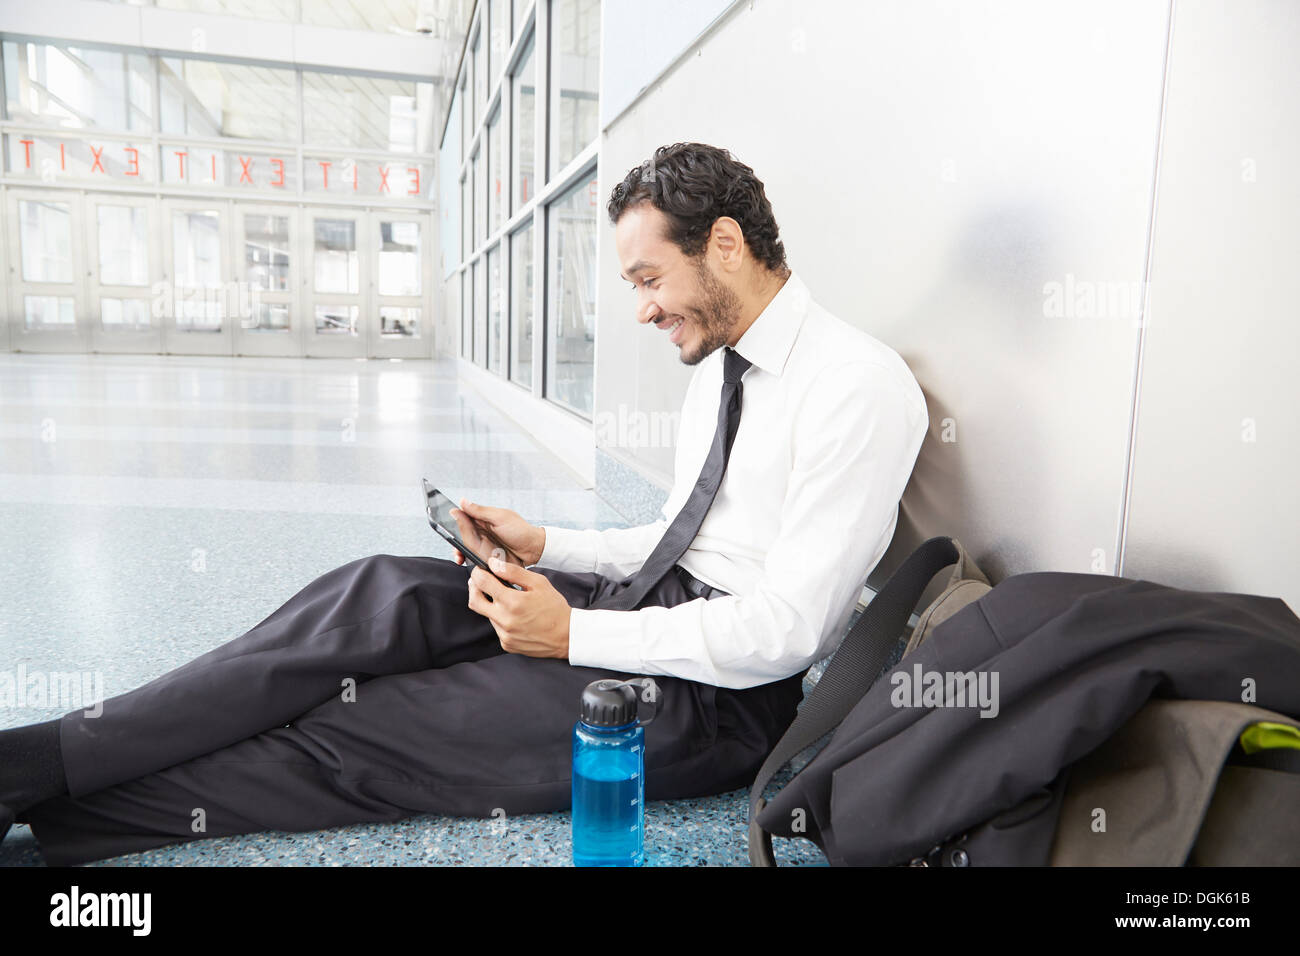 Businessman sitting on floor using digital tablet Banque D'Images